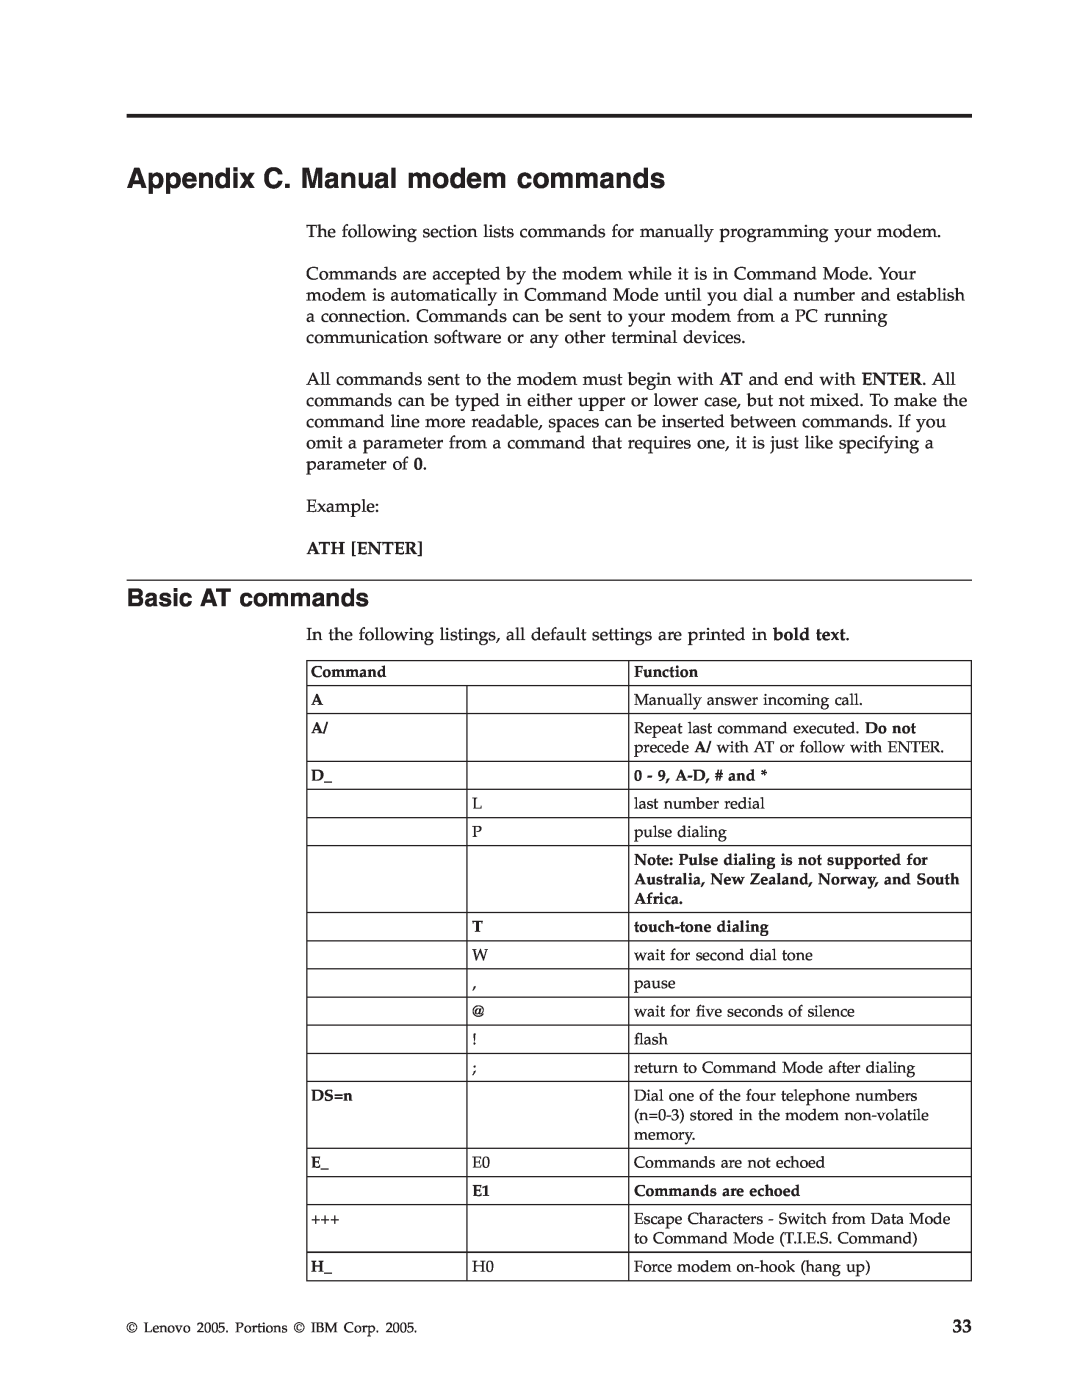 Lenovo 8133, 8135, 8136, 8129, 8132, 8134 manual Appendix C. Manual modem commands, Basic AT commands 